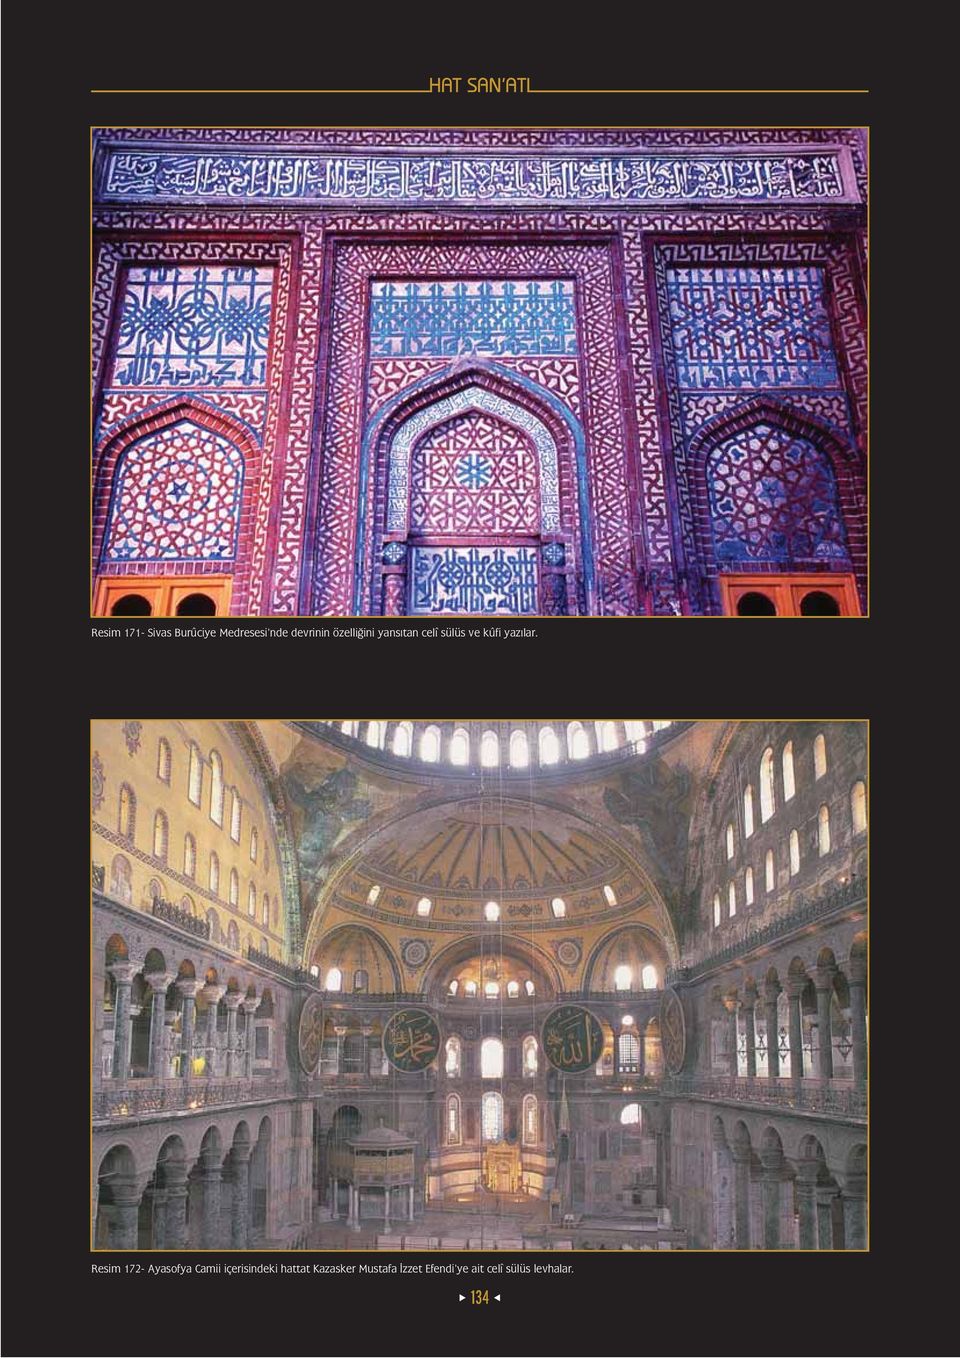 Resim 172- Ayasofya Camii içerisindeki hattat